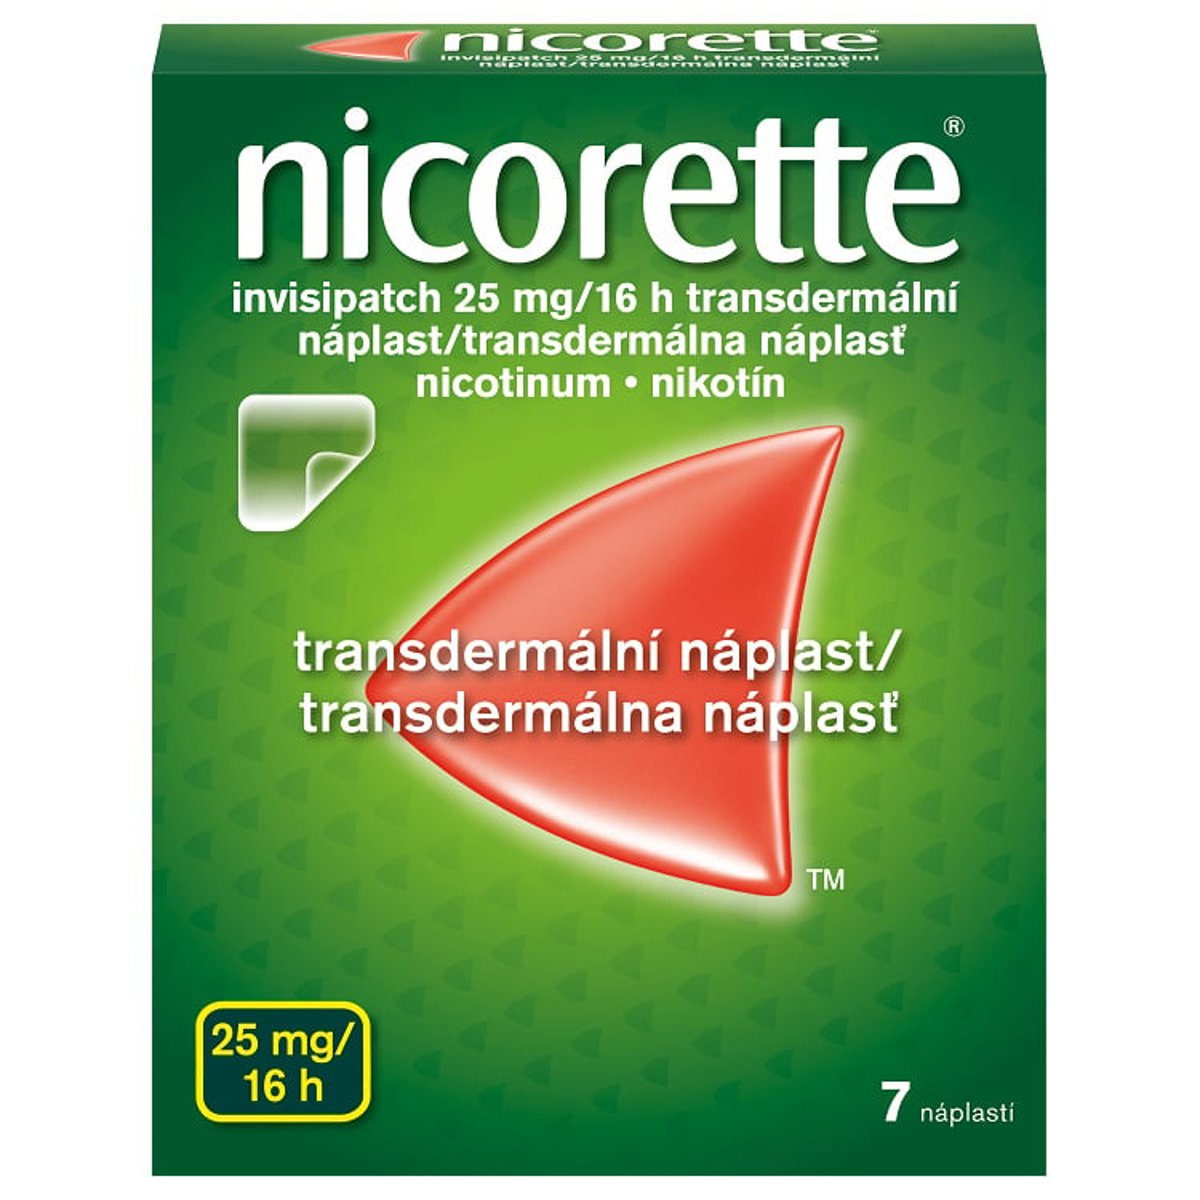 NICORETTE INVISIPATCH 25MG/16H Transdermální náplast 7